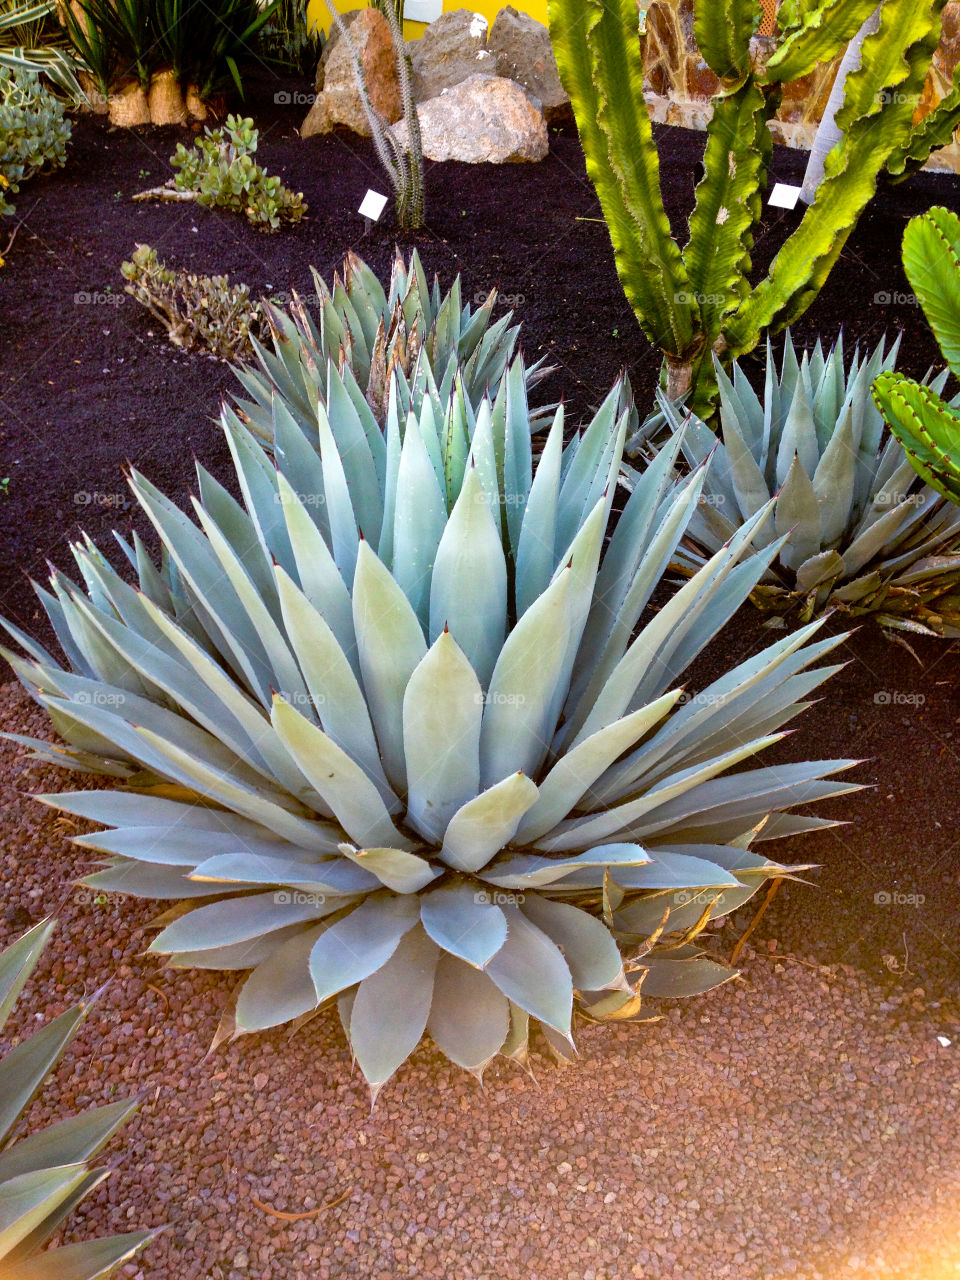 Close-up of a cactus plant